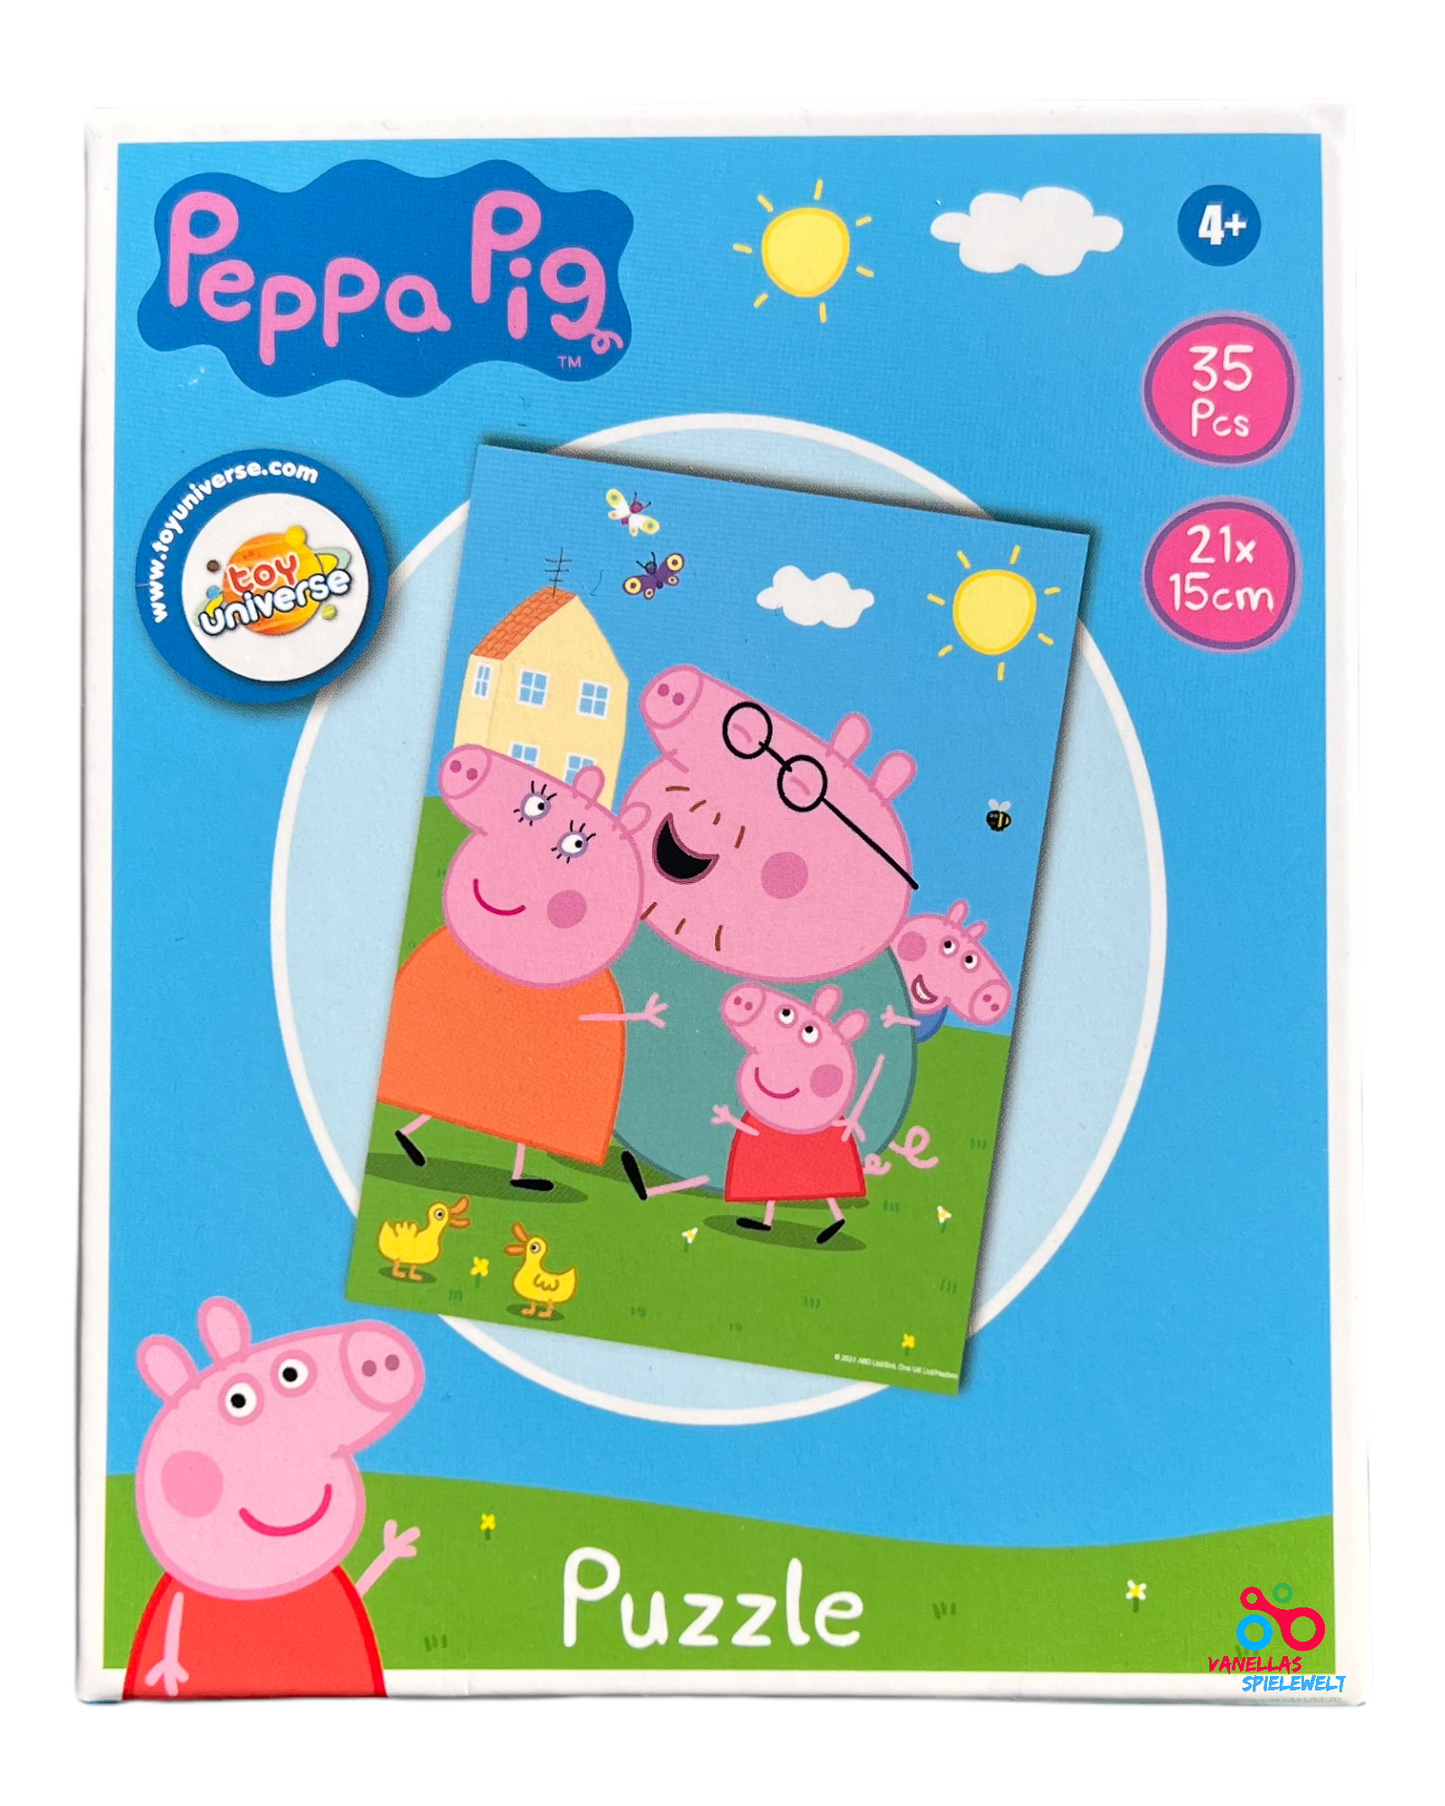 Peppa Pig Mini Puzzle Vanellas Spielewelt